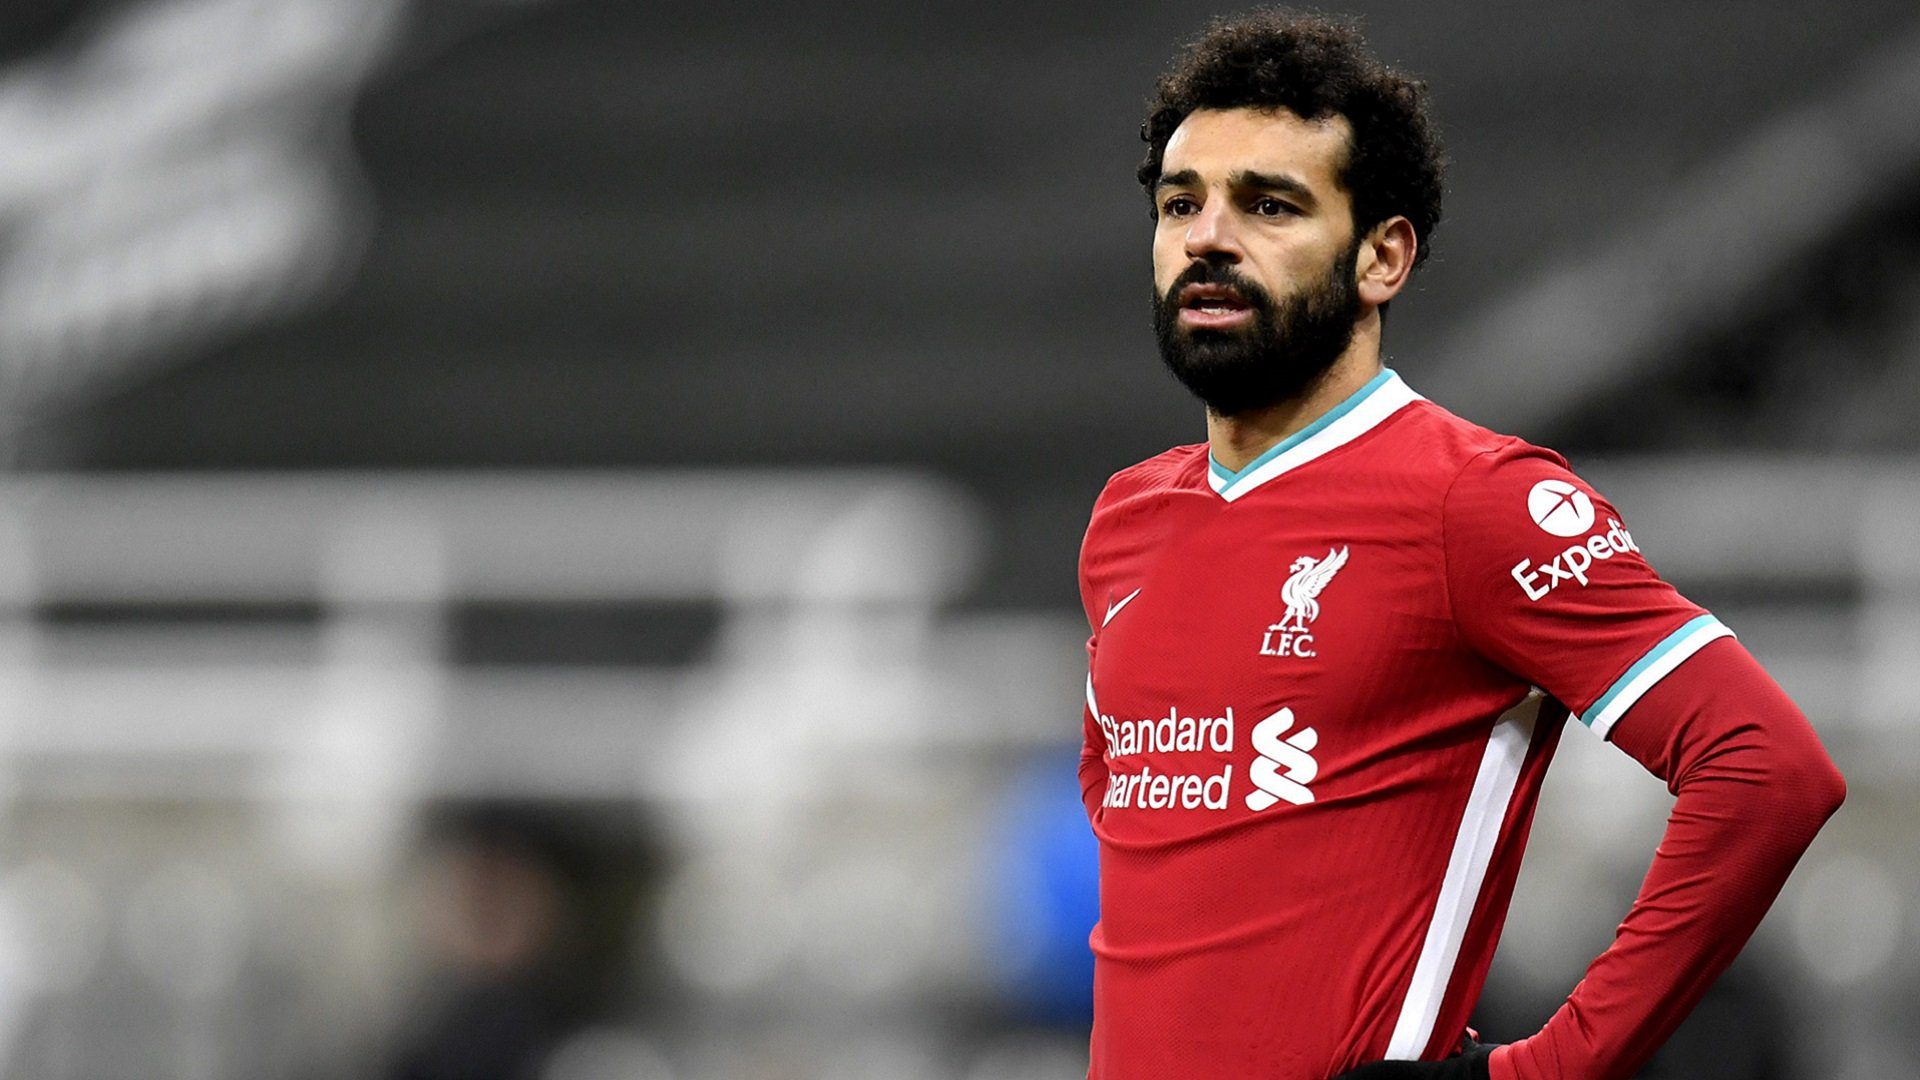 Liverpool : Mohamed Salah Au Cœur D'Une Grosse Polémique Après Son Nouveau Contrat